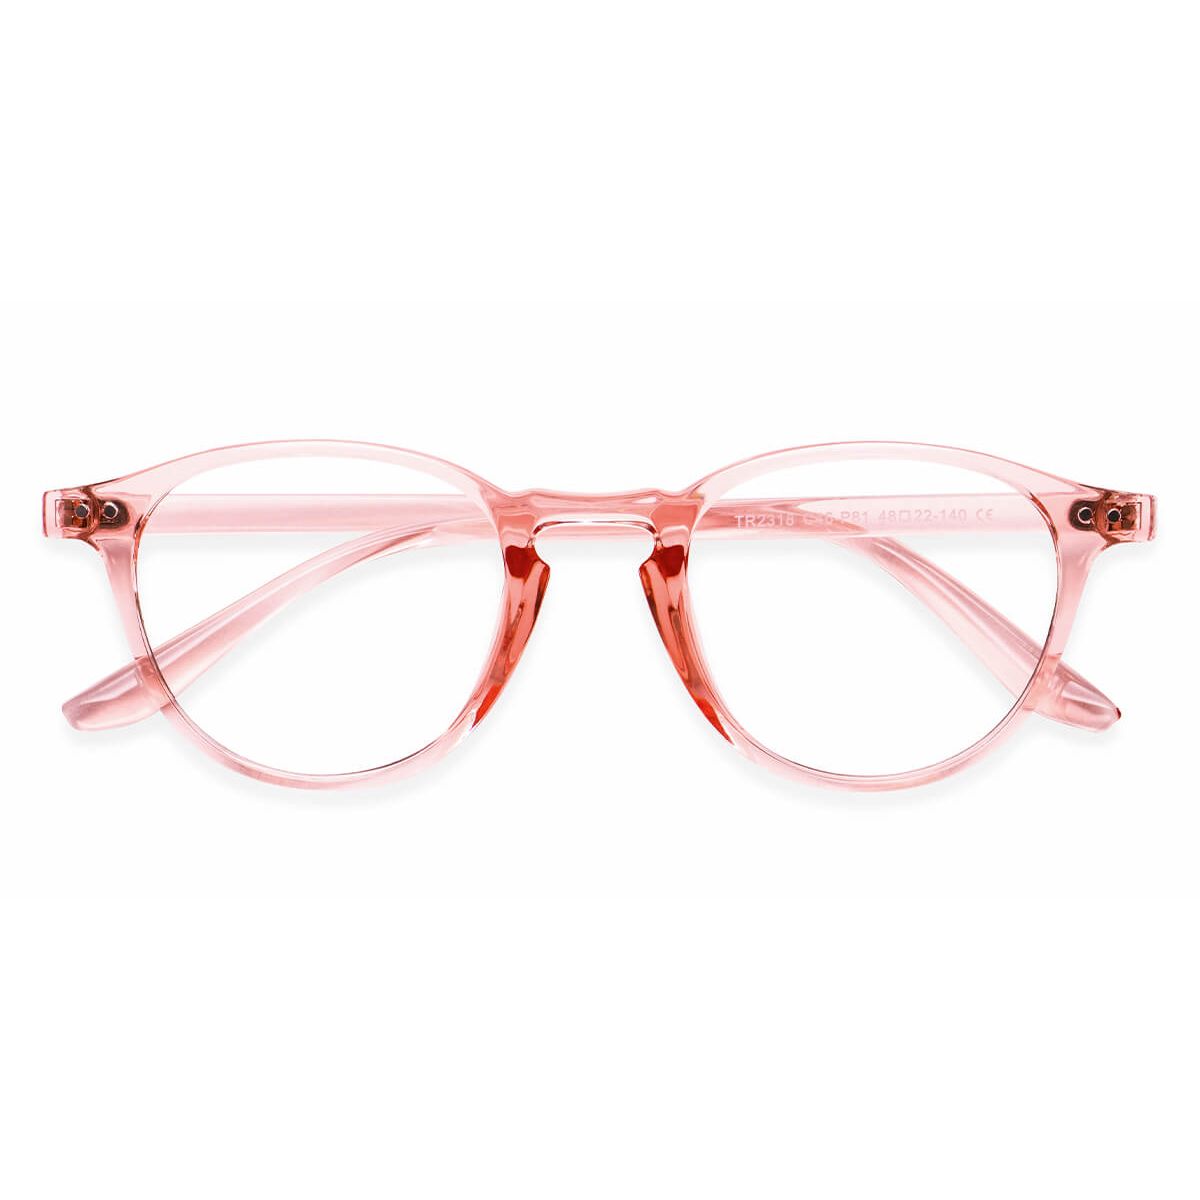 Tr2318 Oval Pink Eyeglasses Frames Leoptique